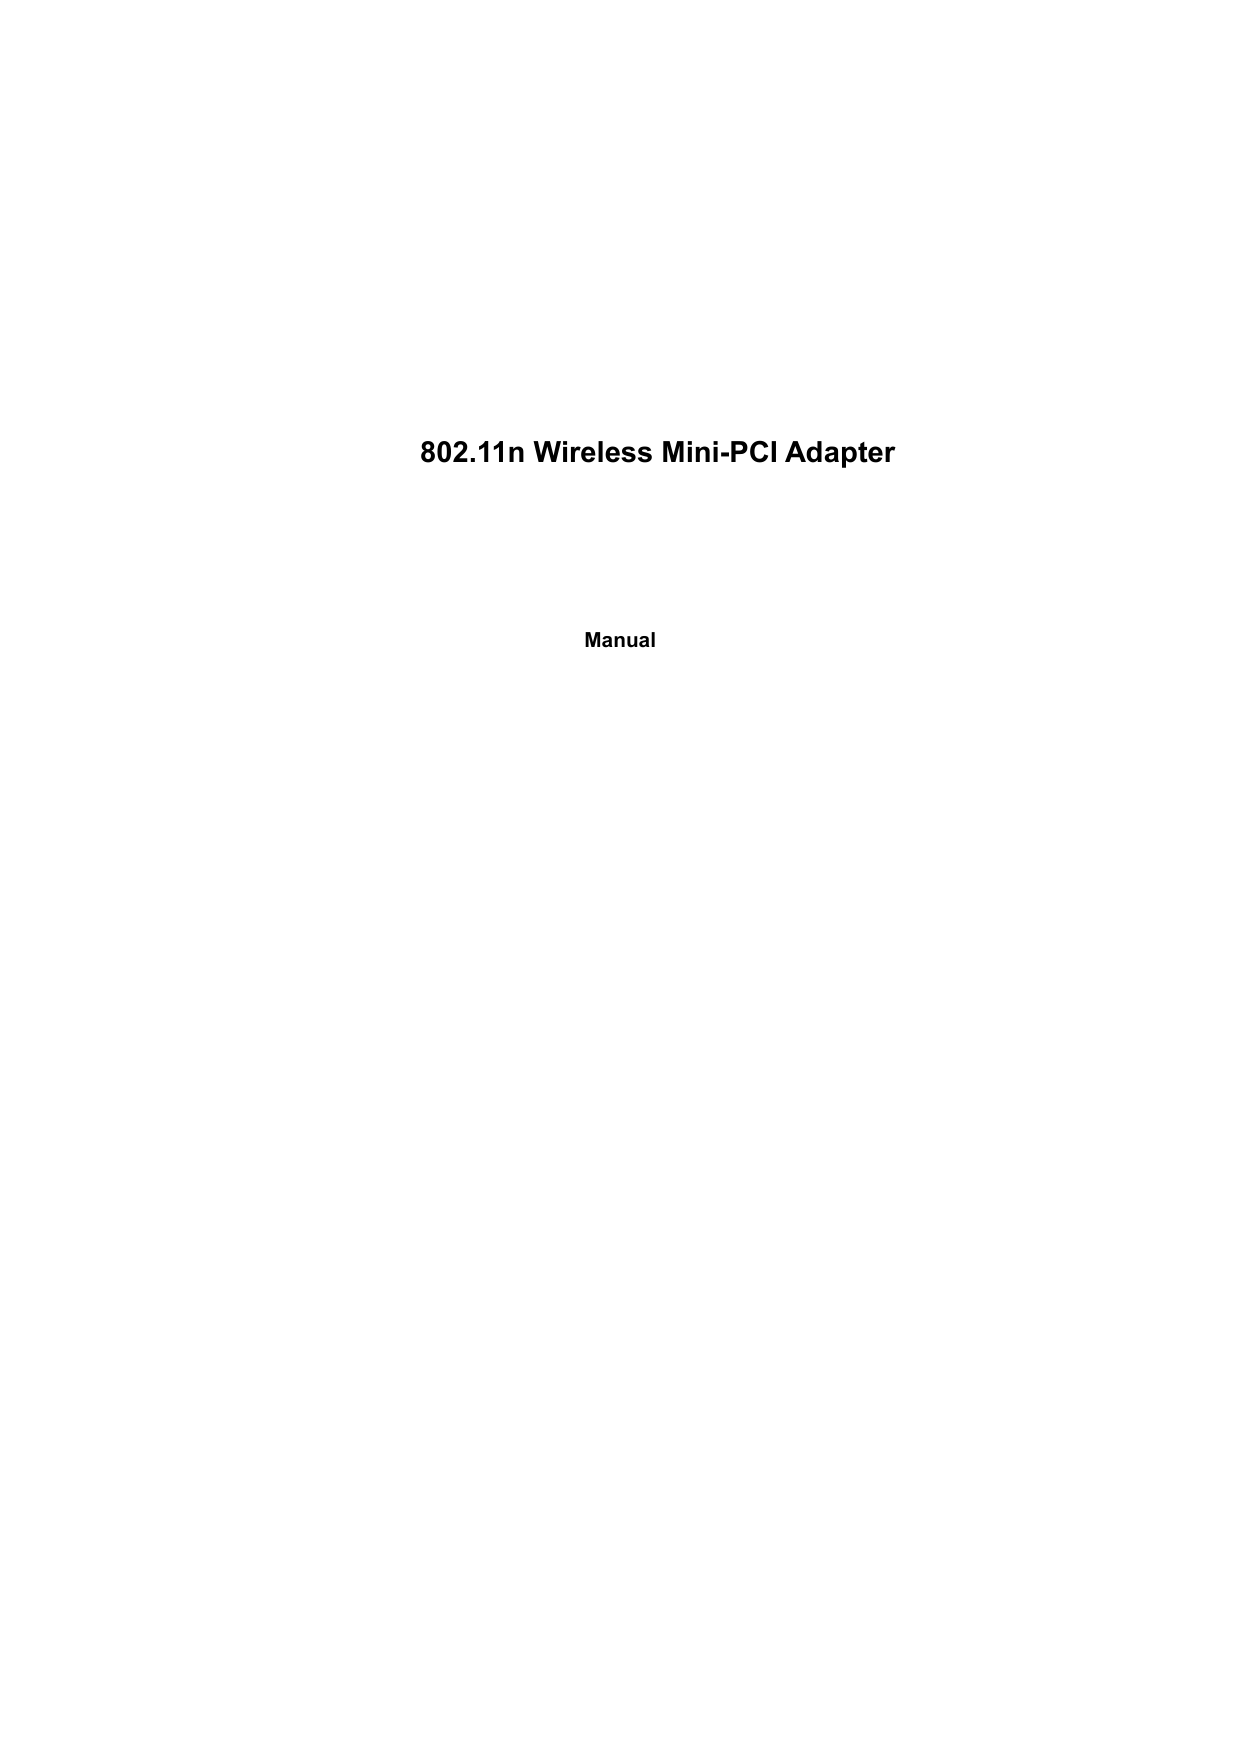 802.11n Wireless Mini-PCI AdapterManual